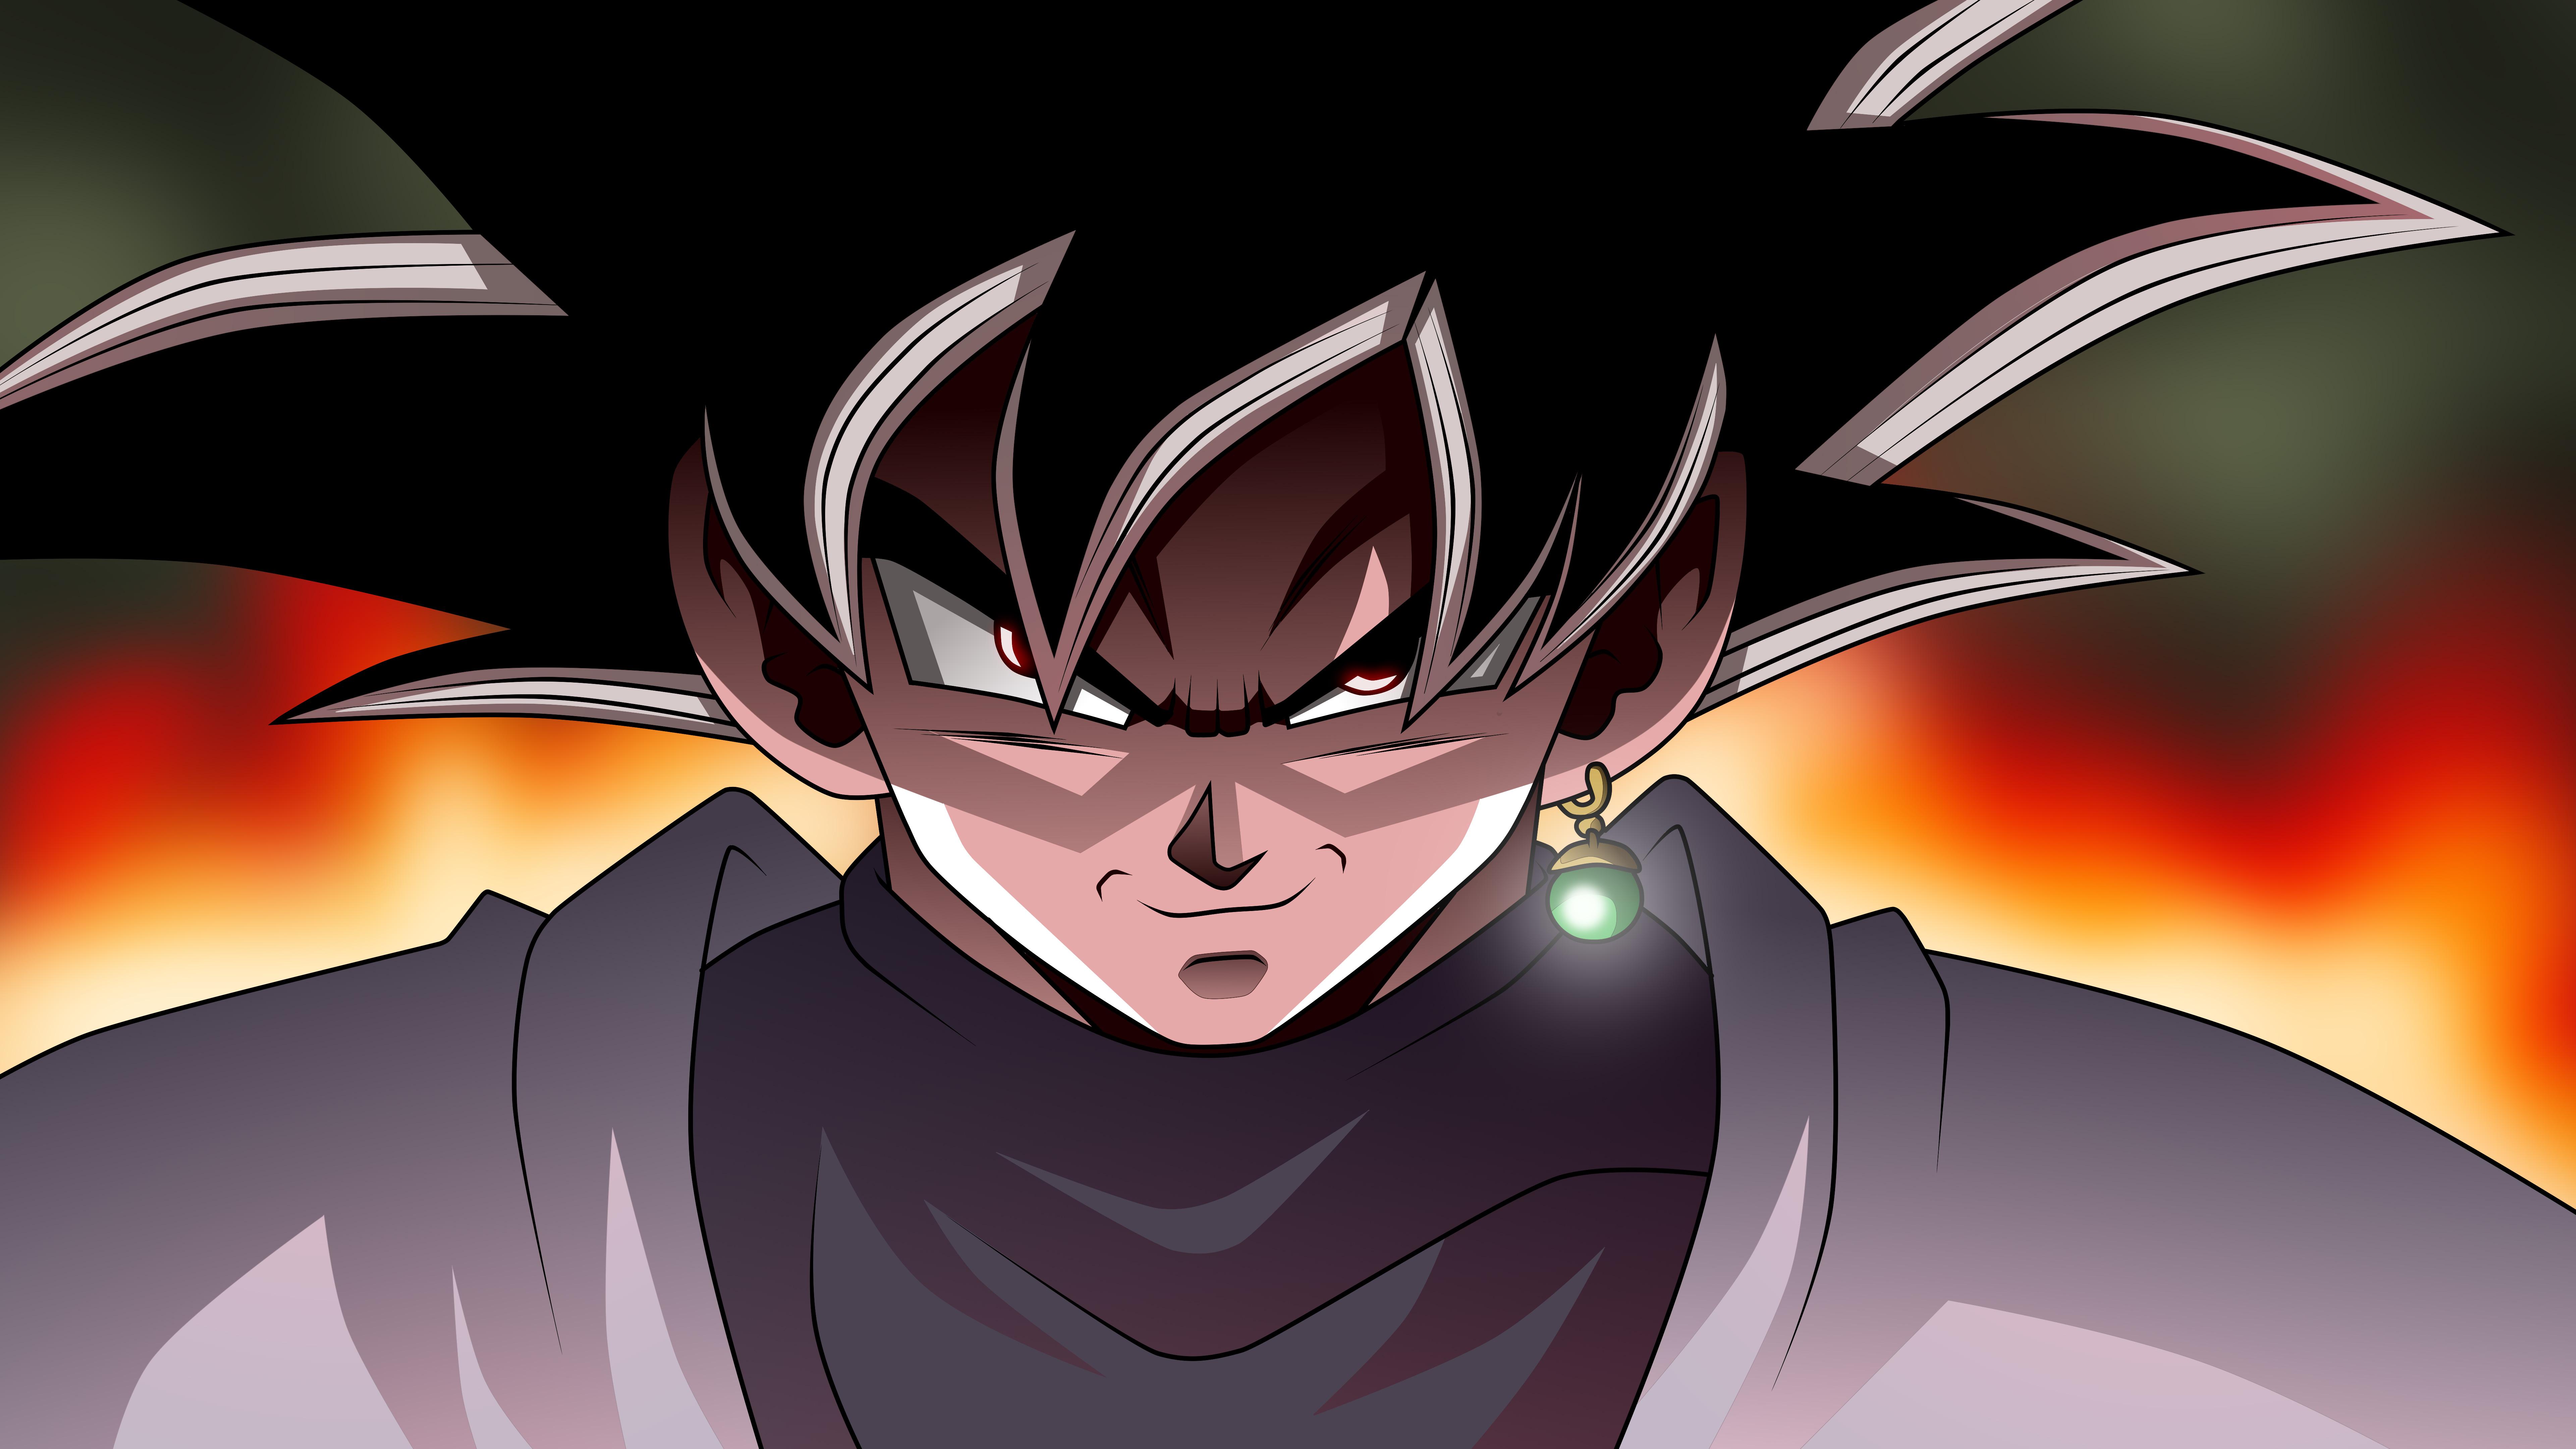 7680 x 4320 · jpeg - Black Goku Dragon Ball Super 8k, HD Anime, 4k Wallpapers, Images ...